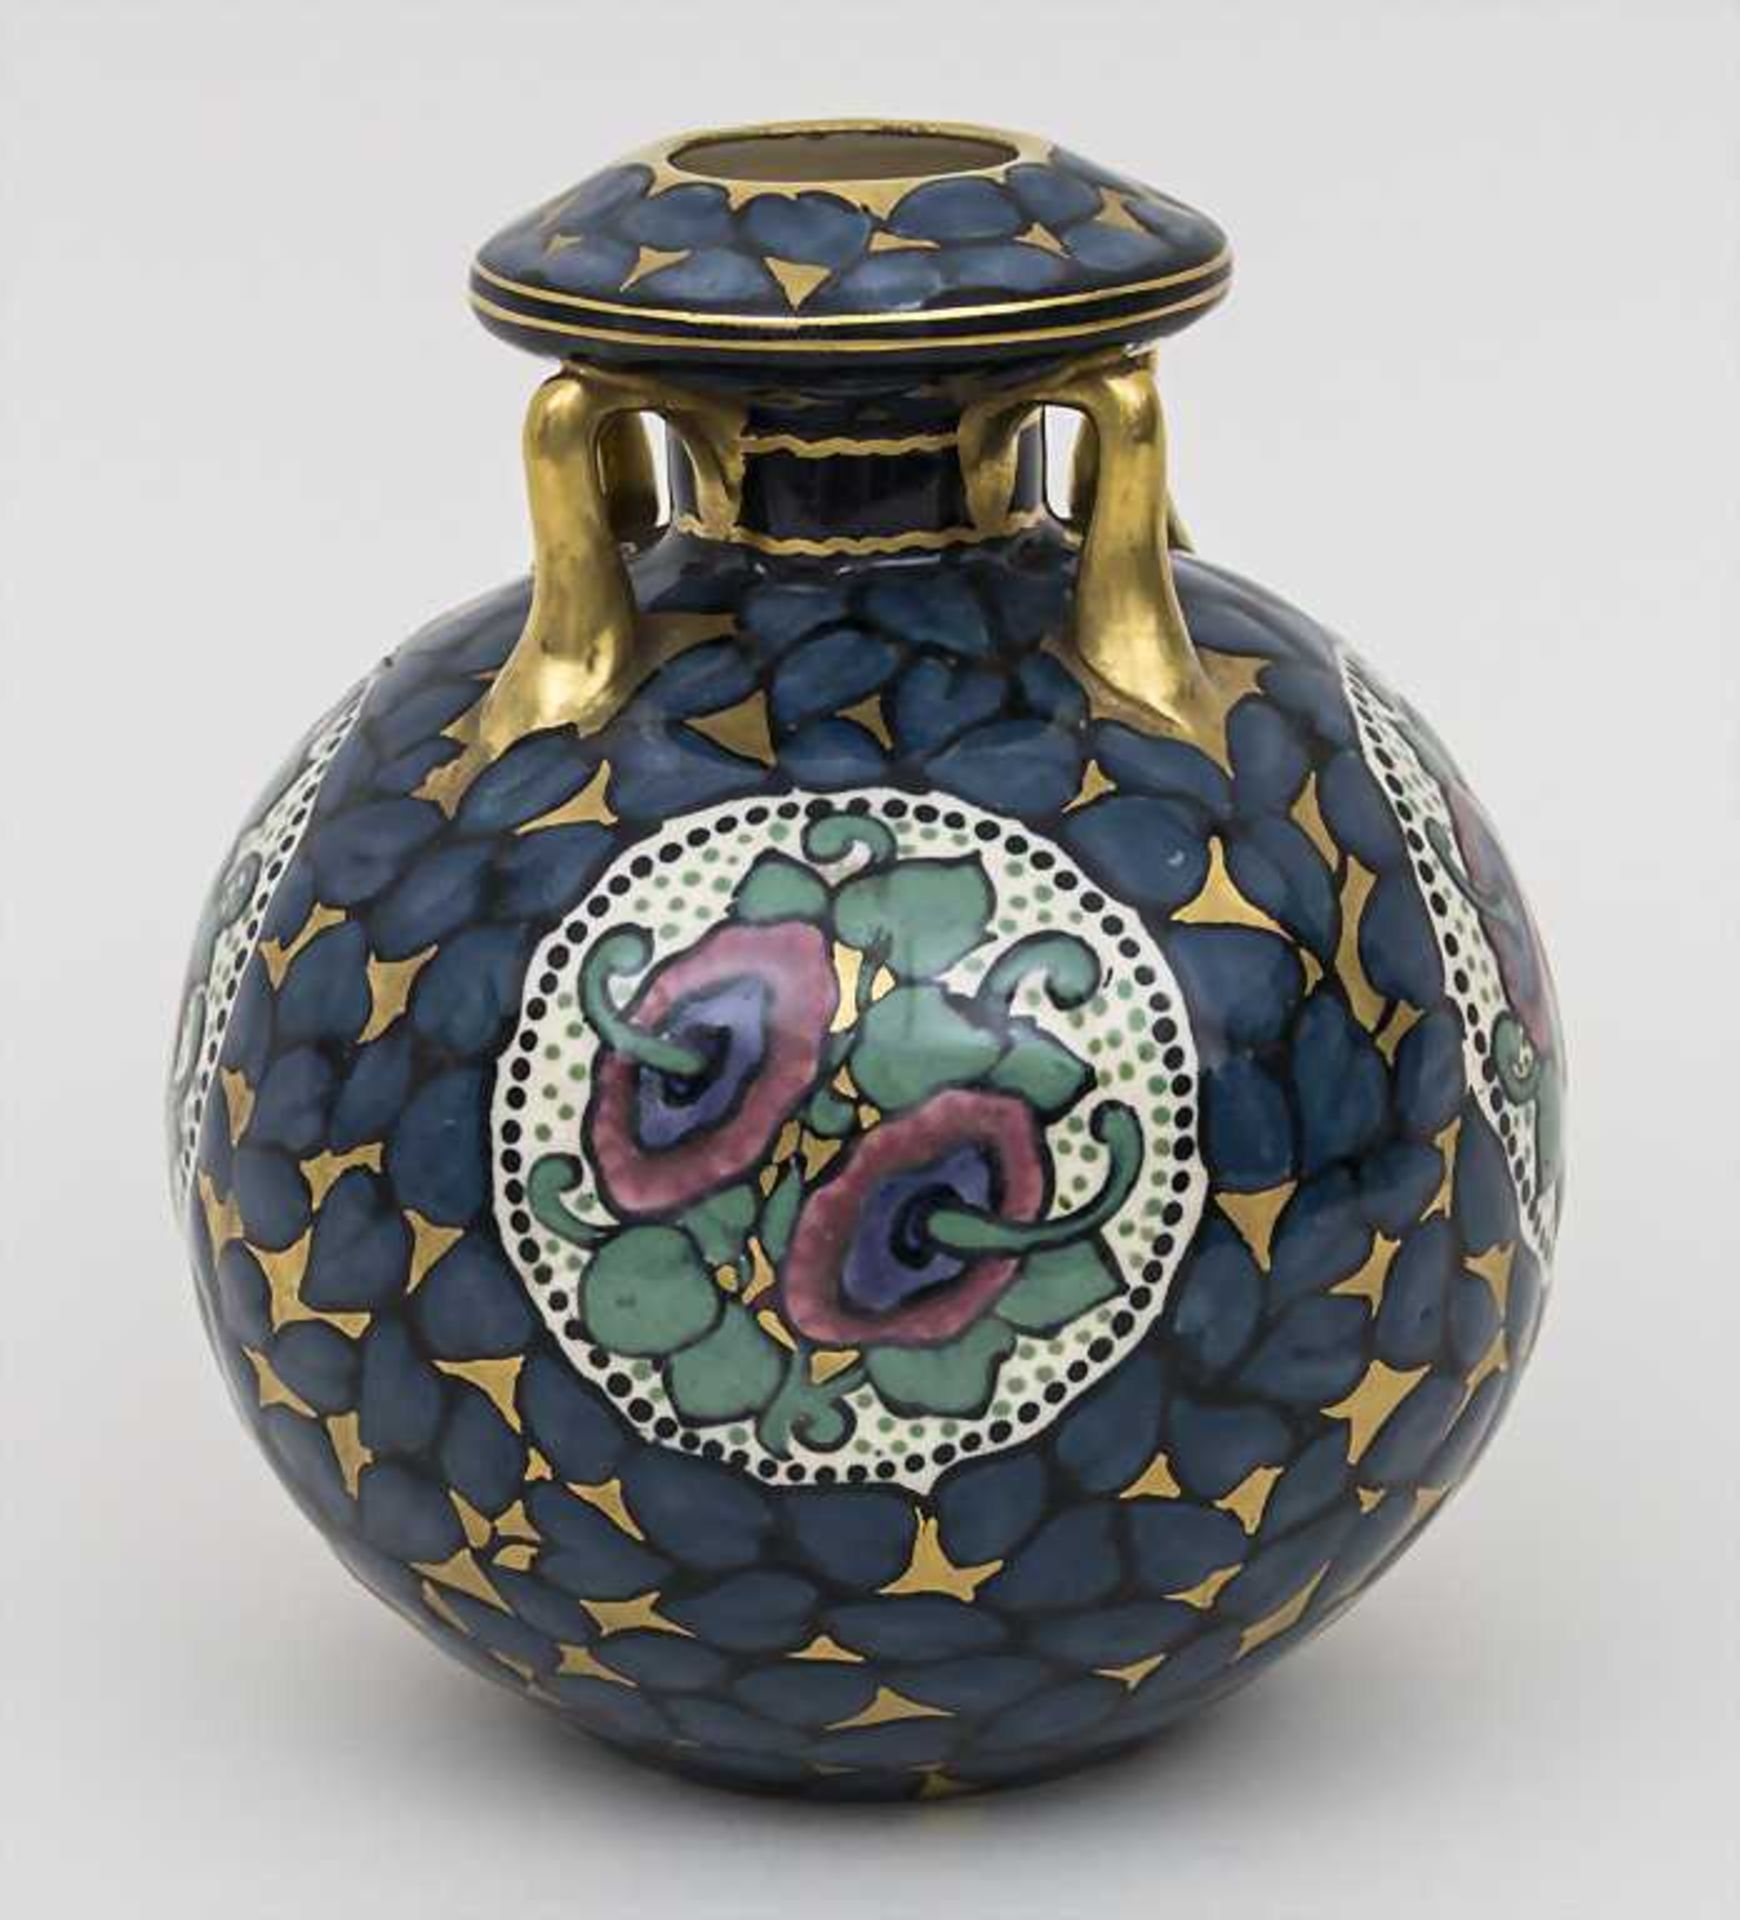 Jugendstil Vase / Art Nouveau Vase, Ernst Wahliss, Turn-Teplitz, ca. 1910 Material: Keramik,